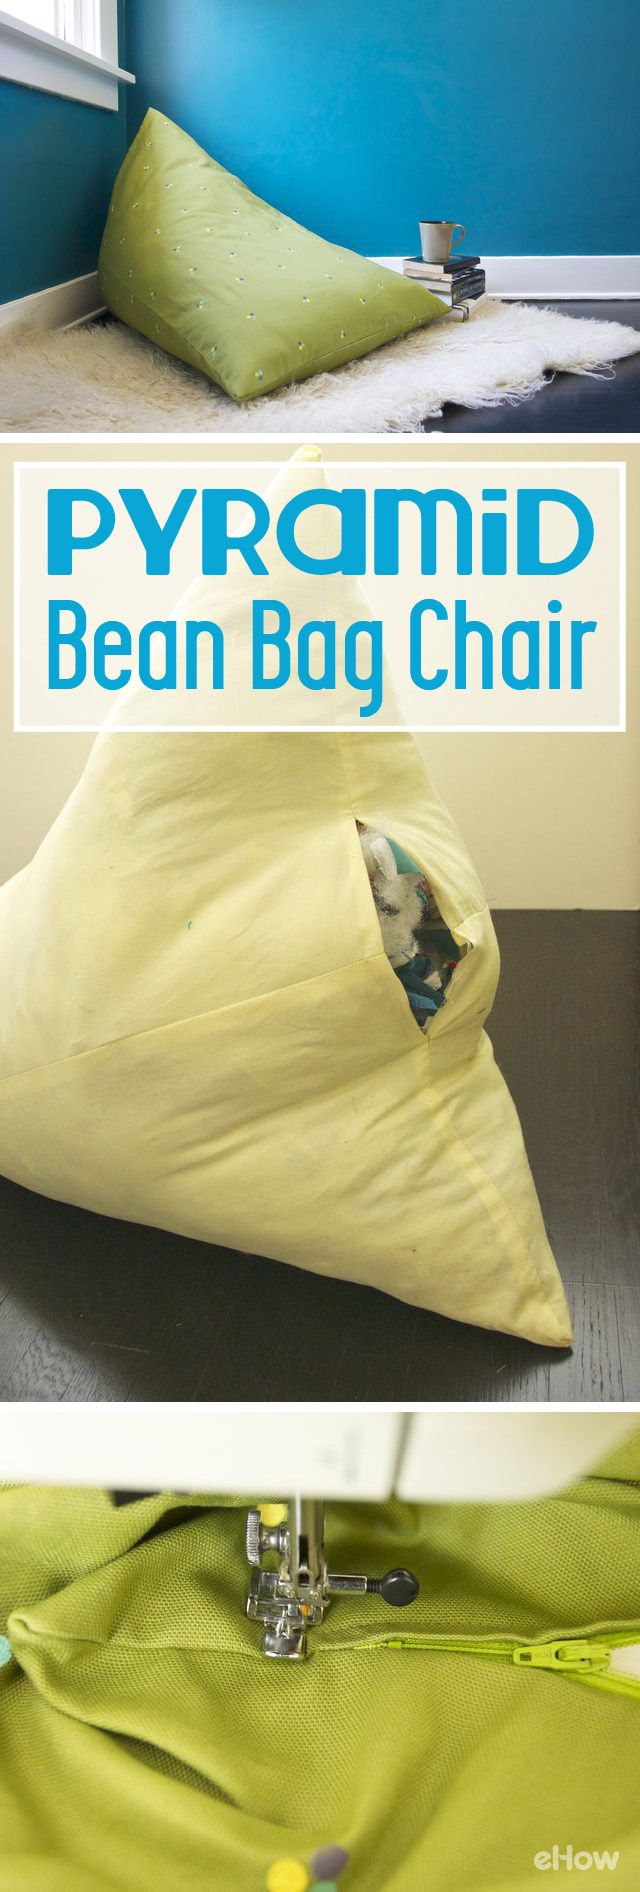 How to Make a Pyramid Beanbag Chair | eHow.com